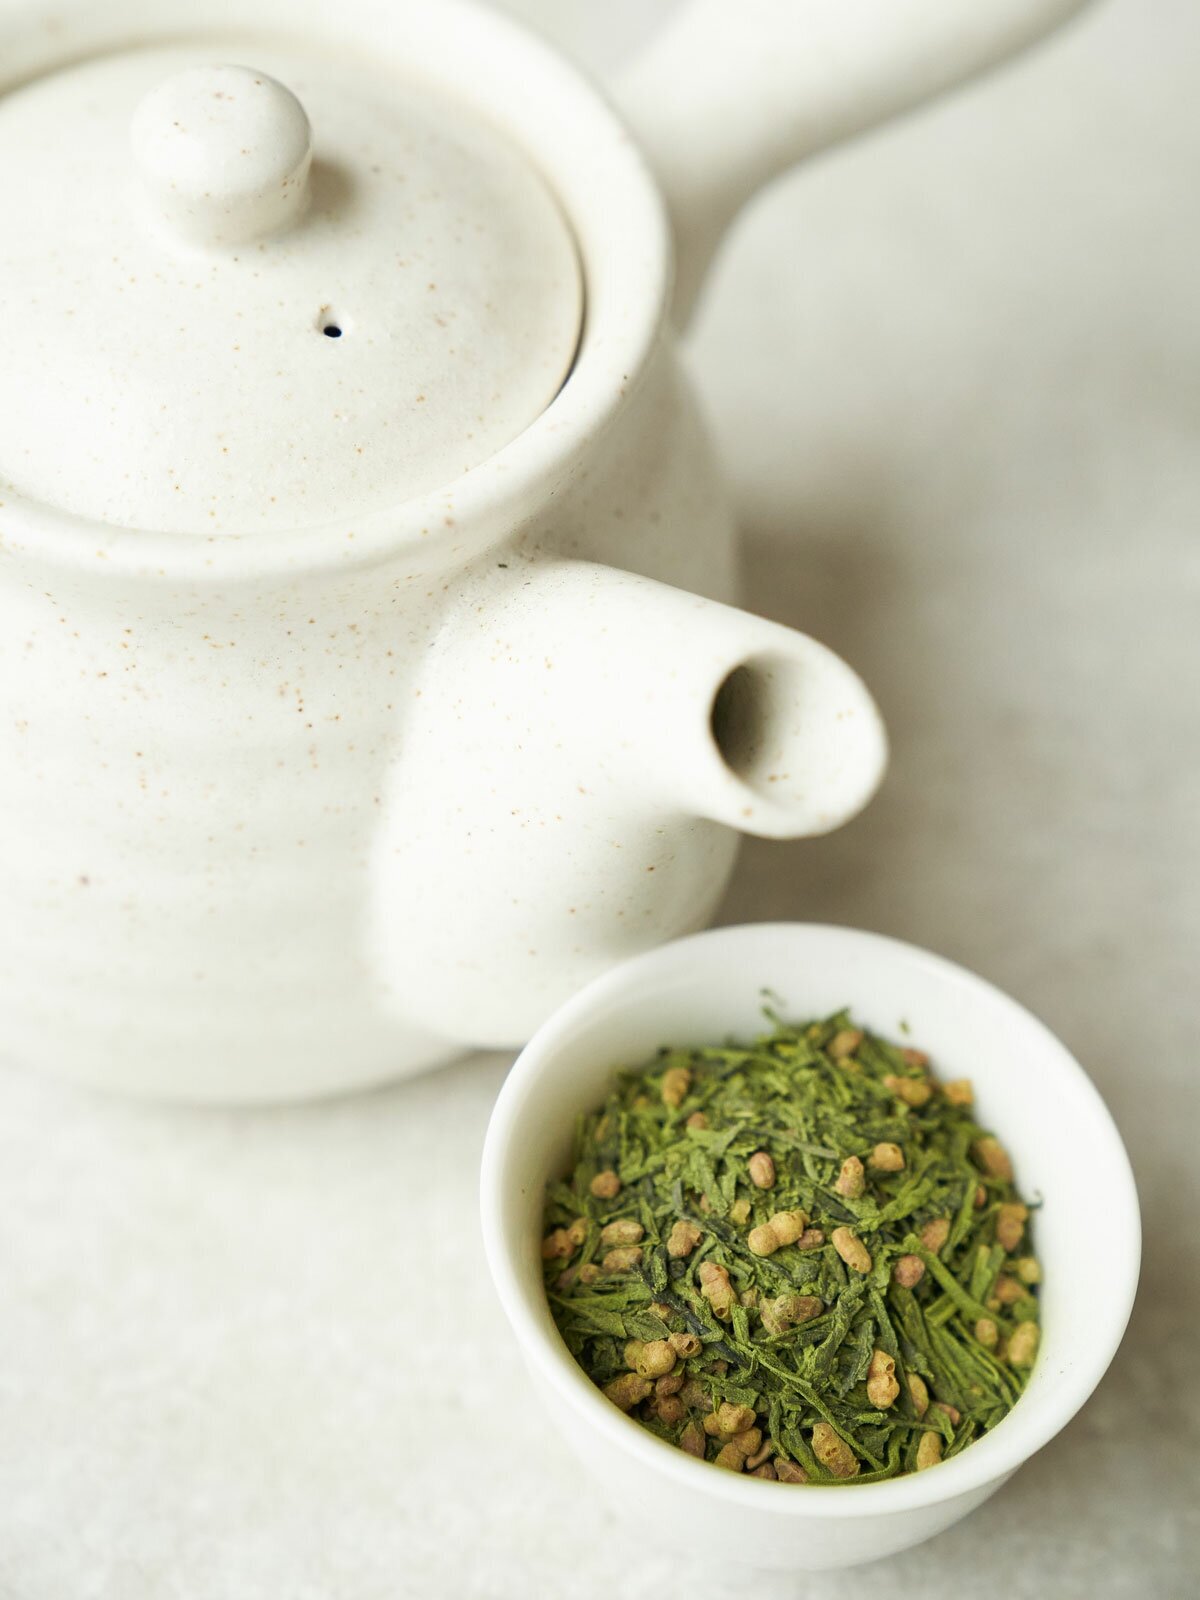 Японский зелёный чай генмайча, ORIGAMI TEA, 50 г зеленый чай сенча с добавлением матча, чай зеленый рассыпной, чай матча, маття чай, чай зеленый листовой. зелёный с матча.